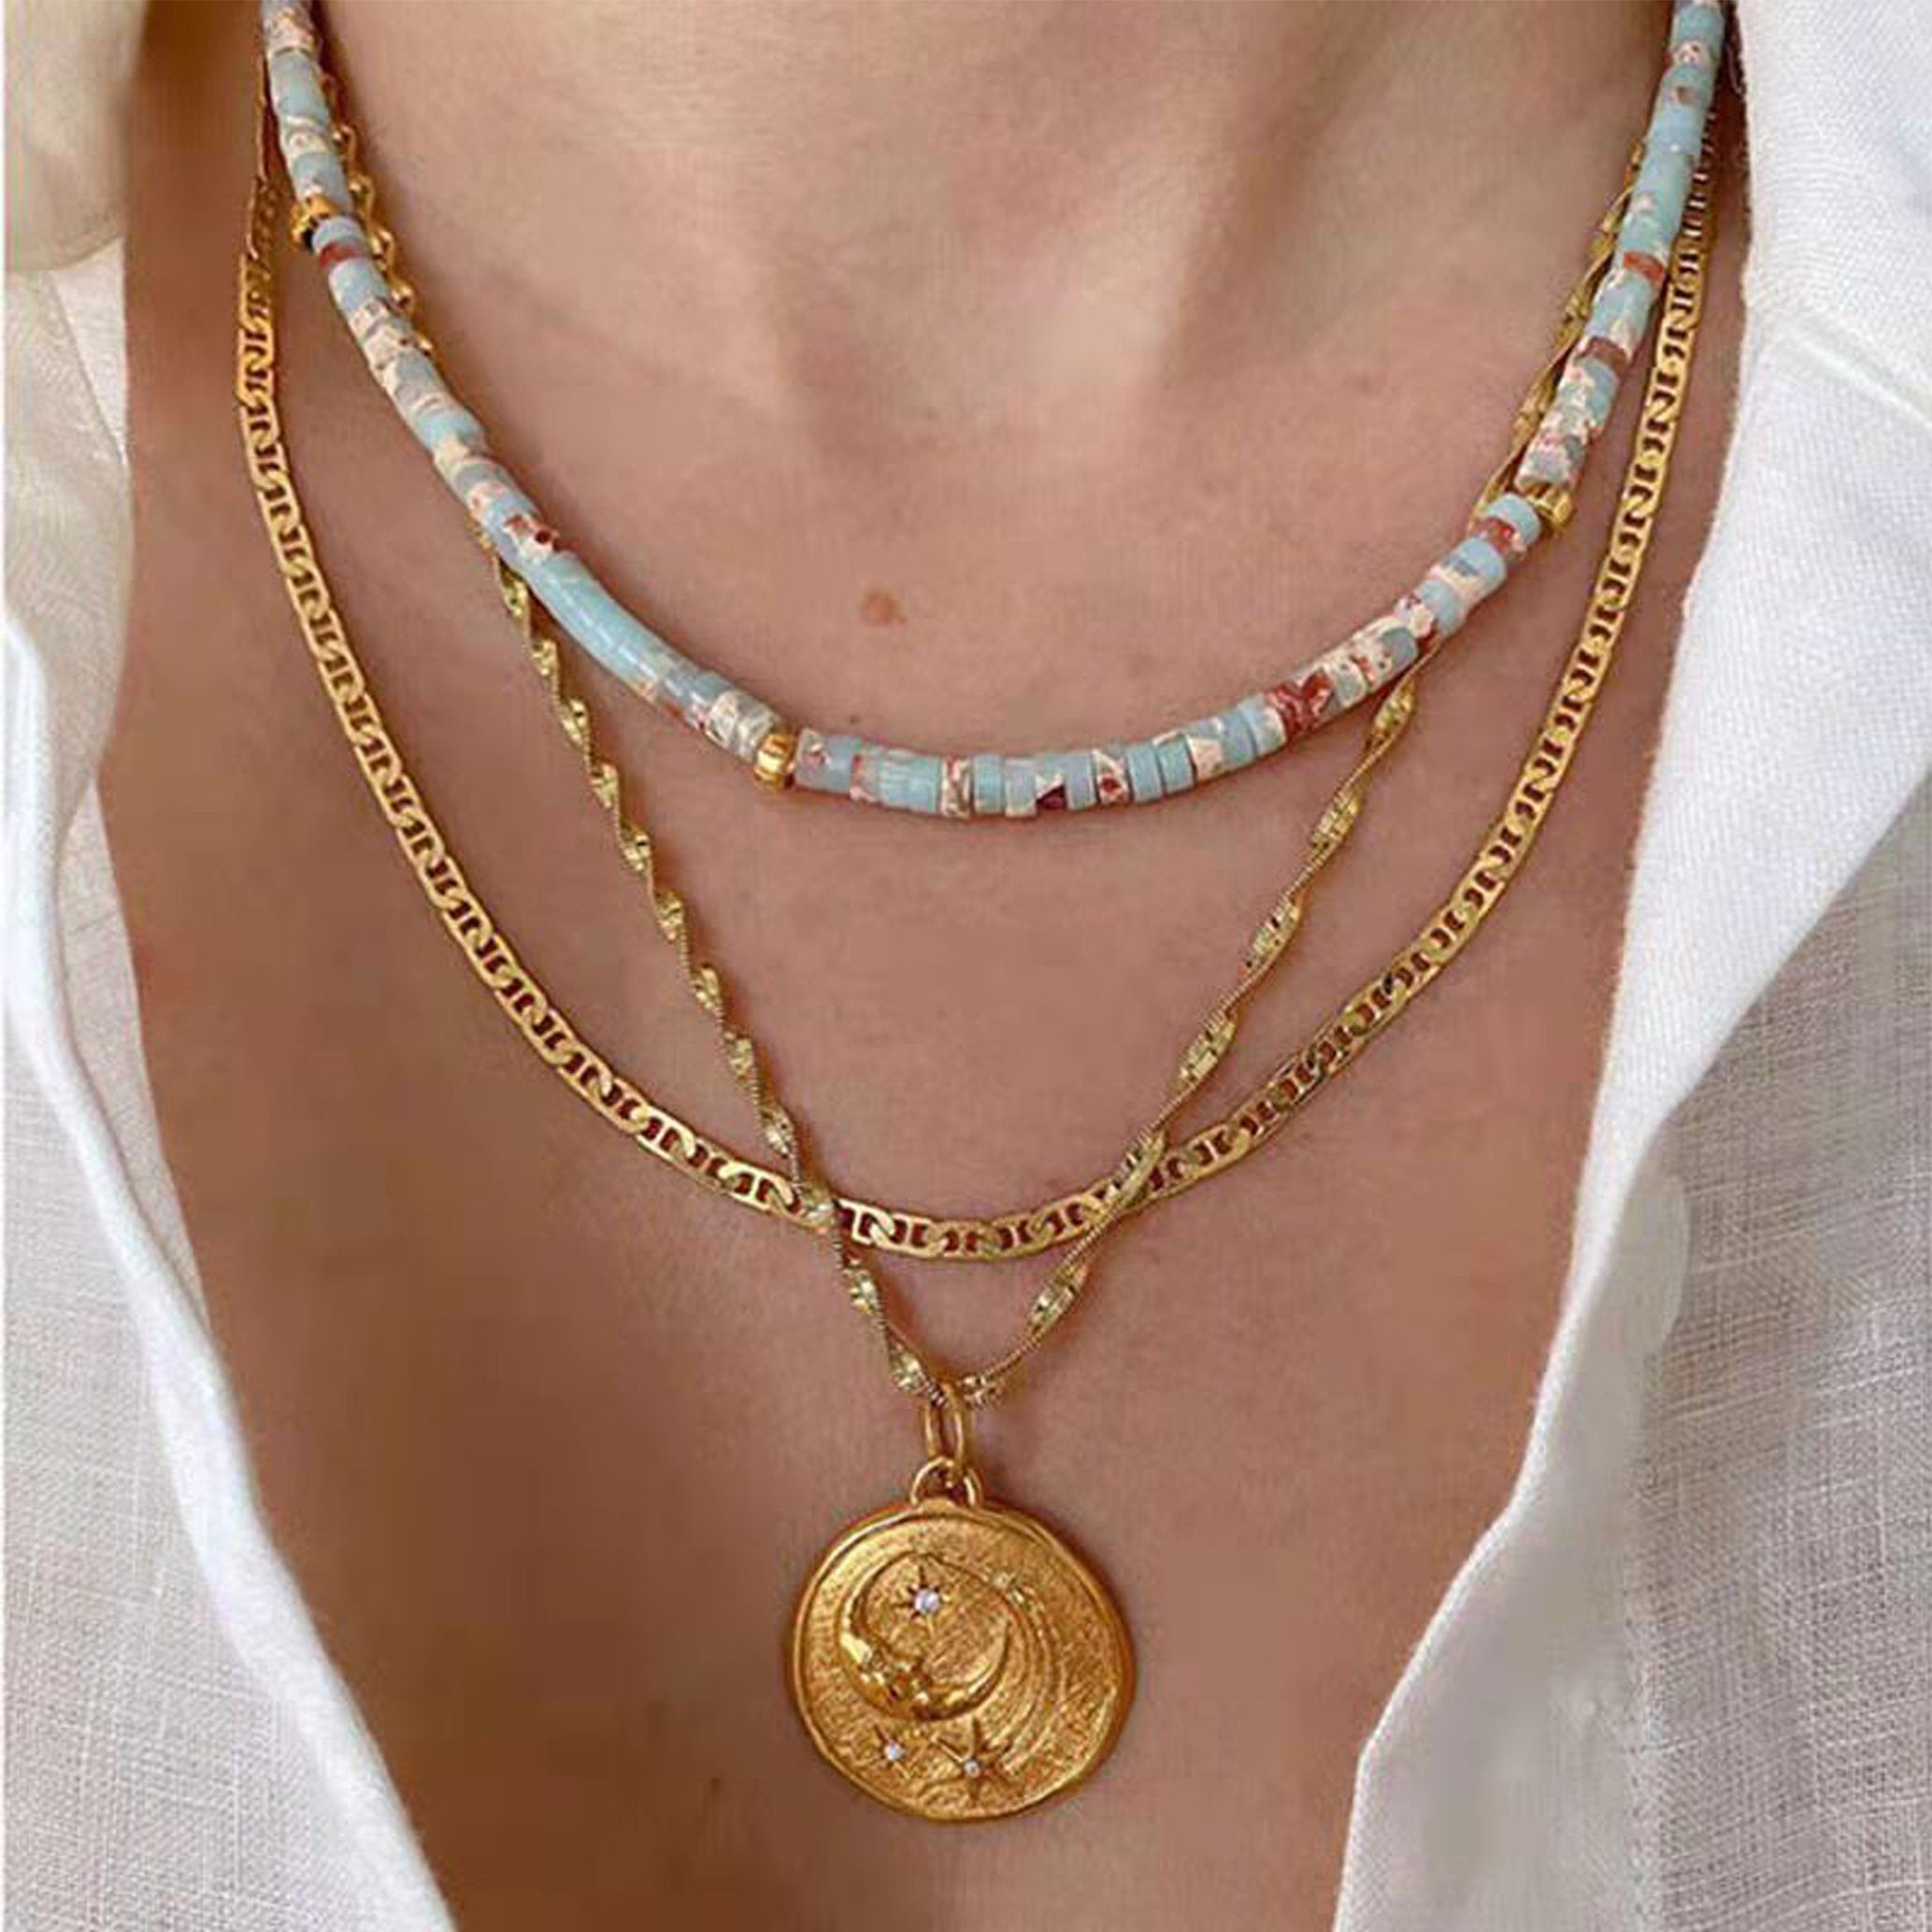 GOLDEN Charm-Kette Sommerliche Medusa Halskette aus Glasperlen, Edelsteinen 18K vergoldet Basichain